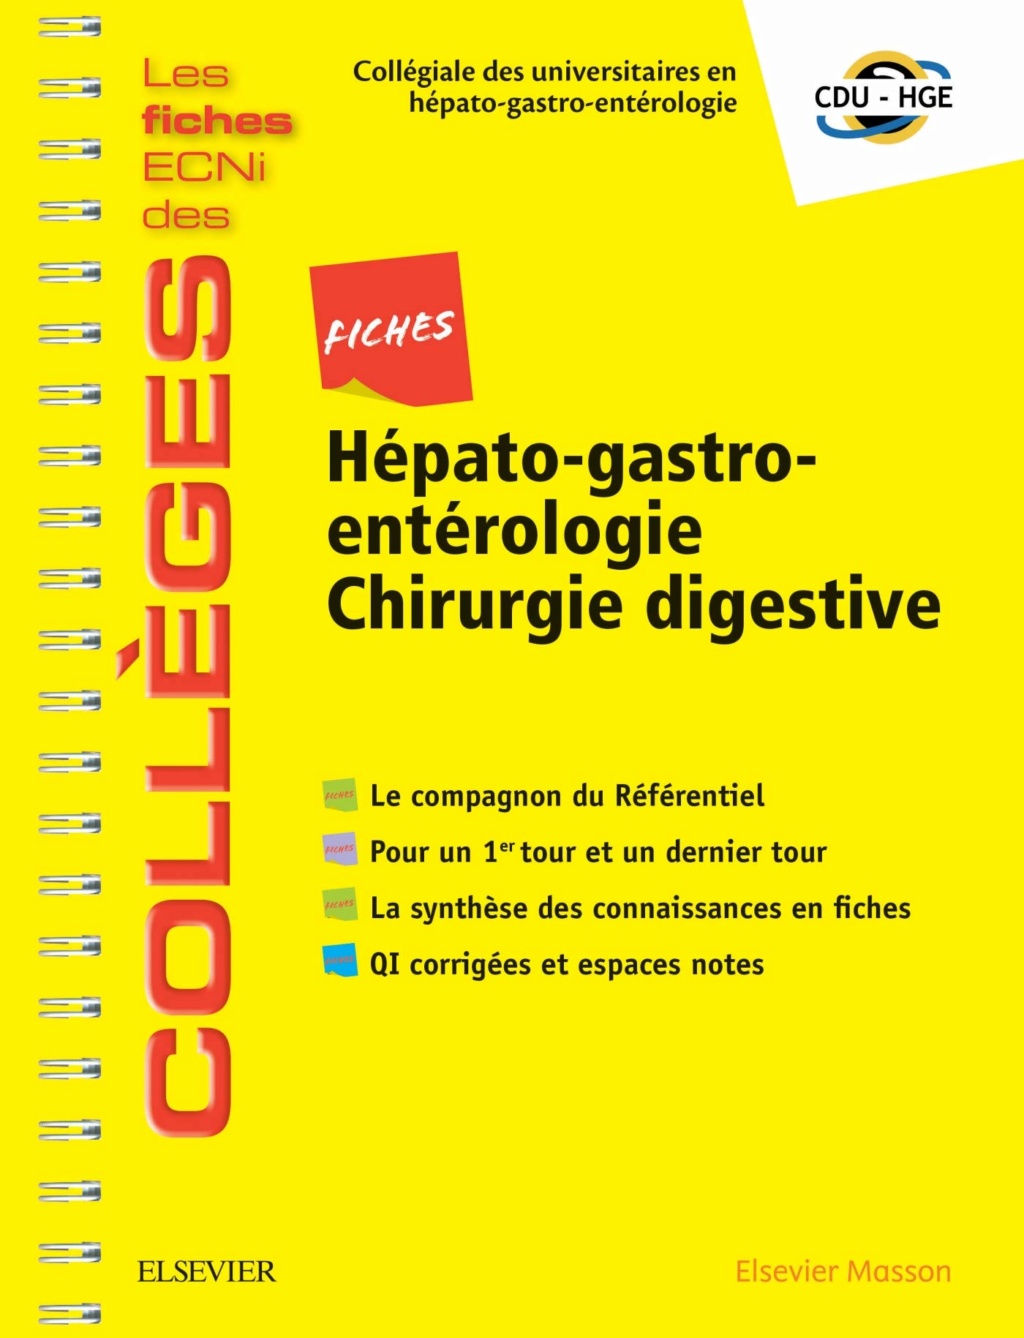 Livres Médicales - Fiches Hépato-gastro-entérologie Chirurgie digestive: Les fiches ECNi et QI des Collèges 2019 - Page 12 Fiches11